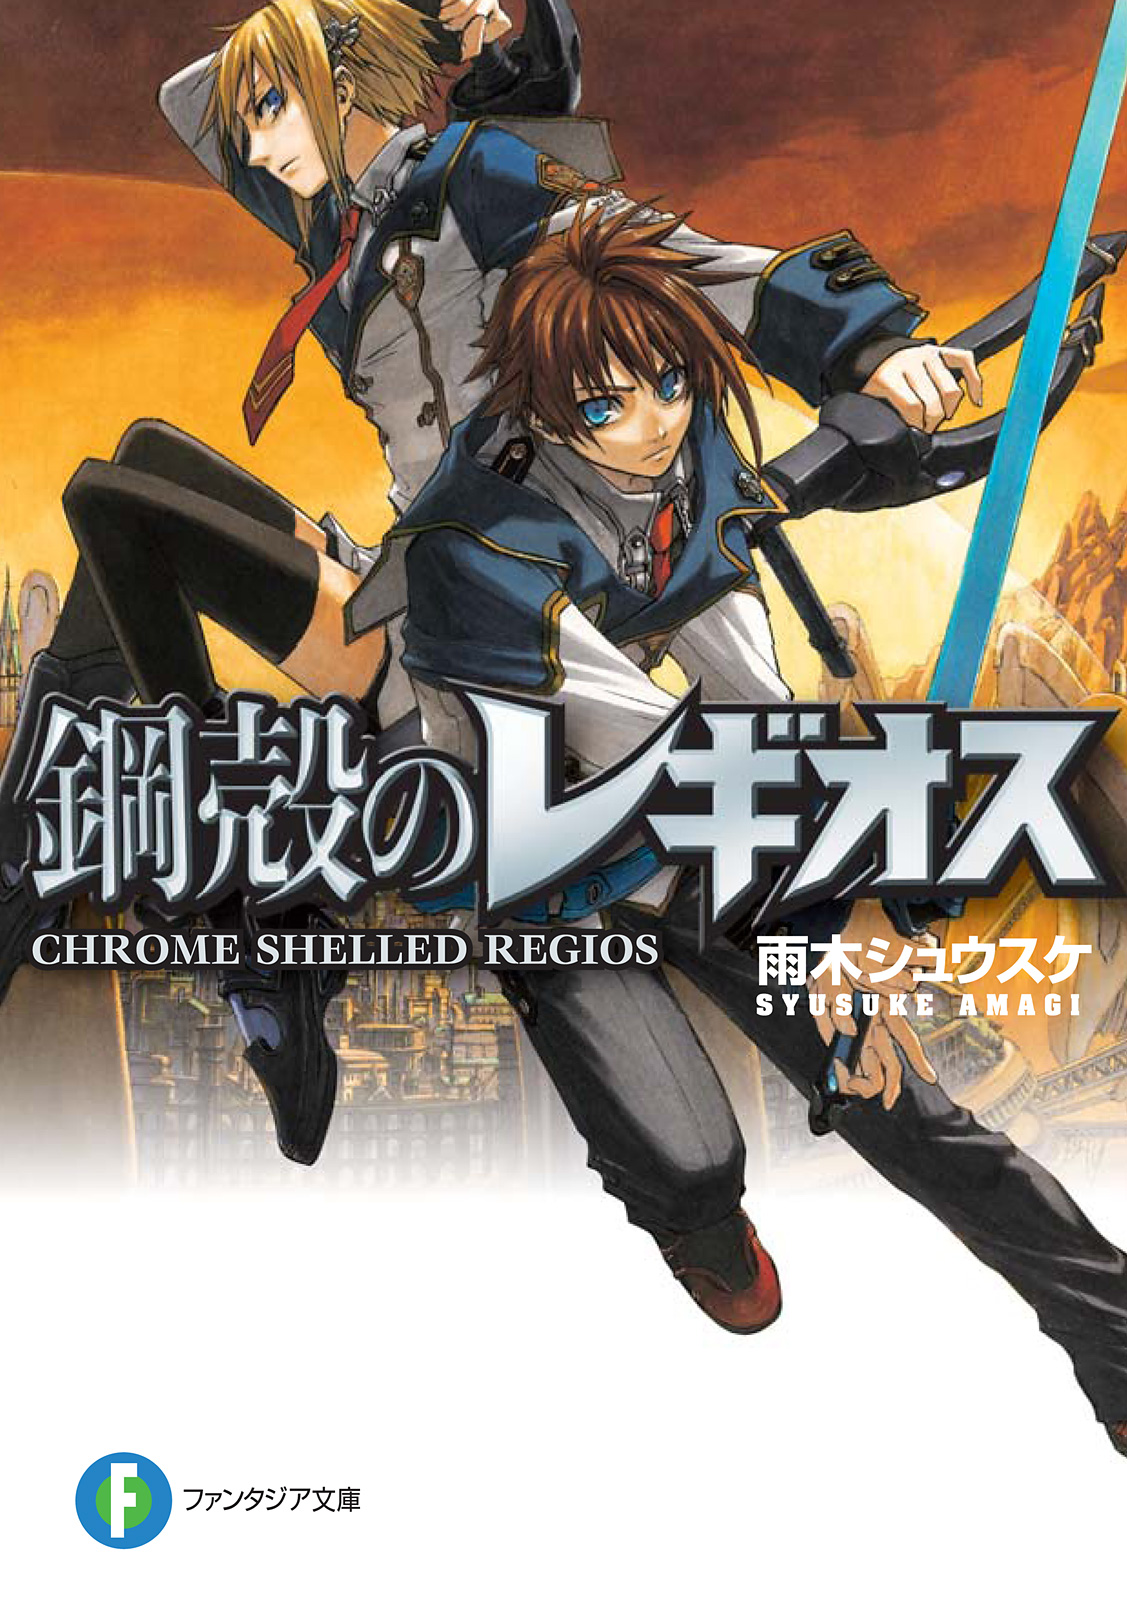 Chrome Shelled Regios:Volume21 Chapter3 - Baka-Tsuki